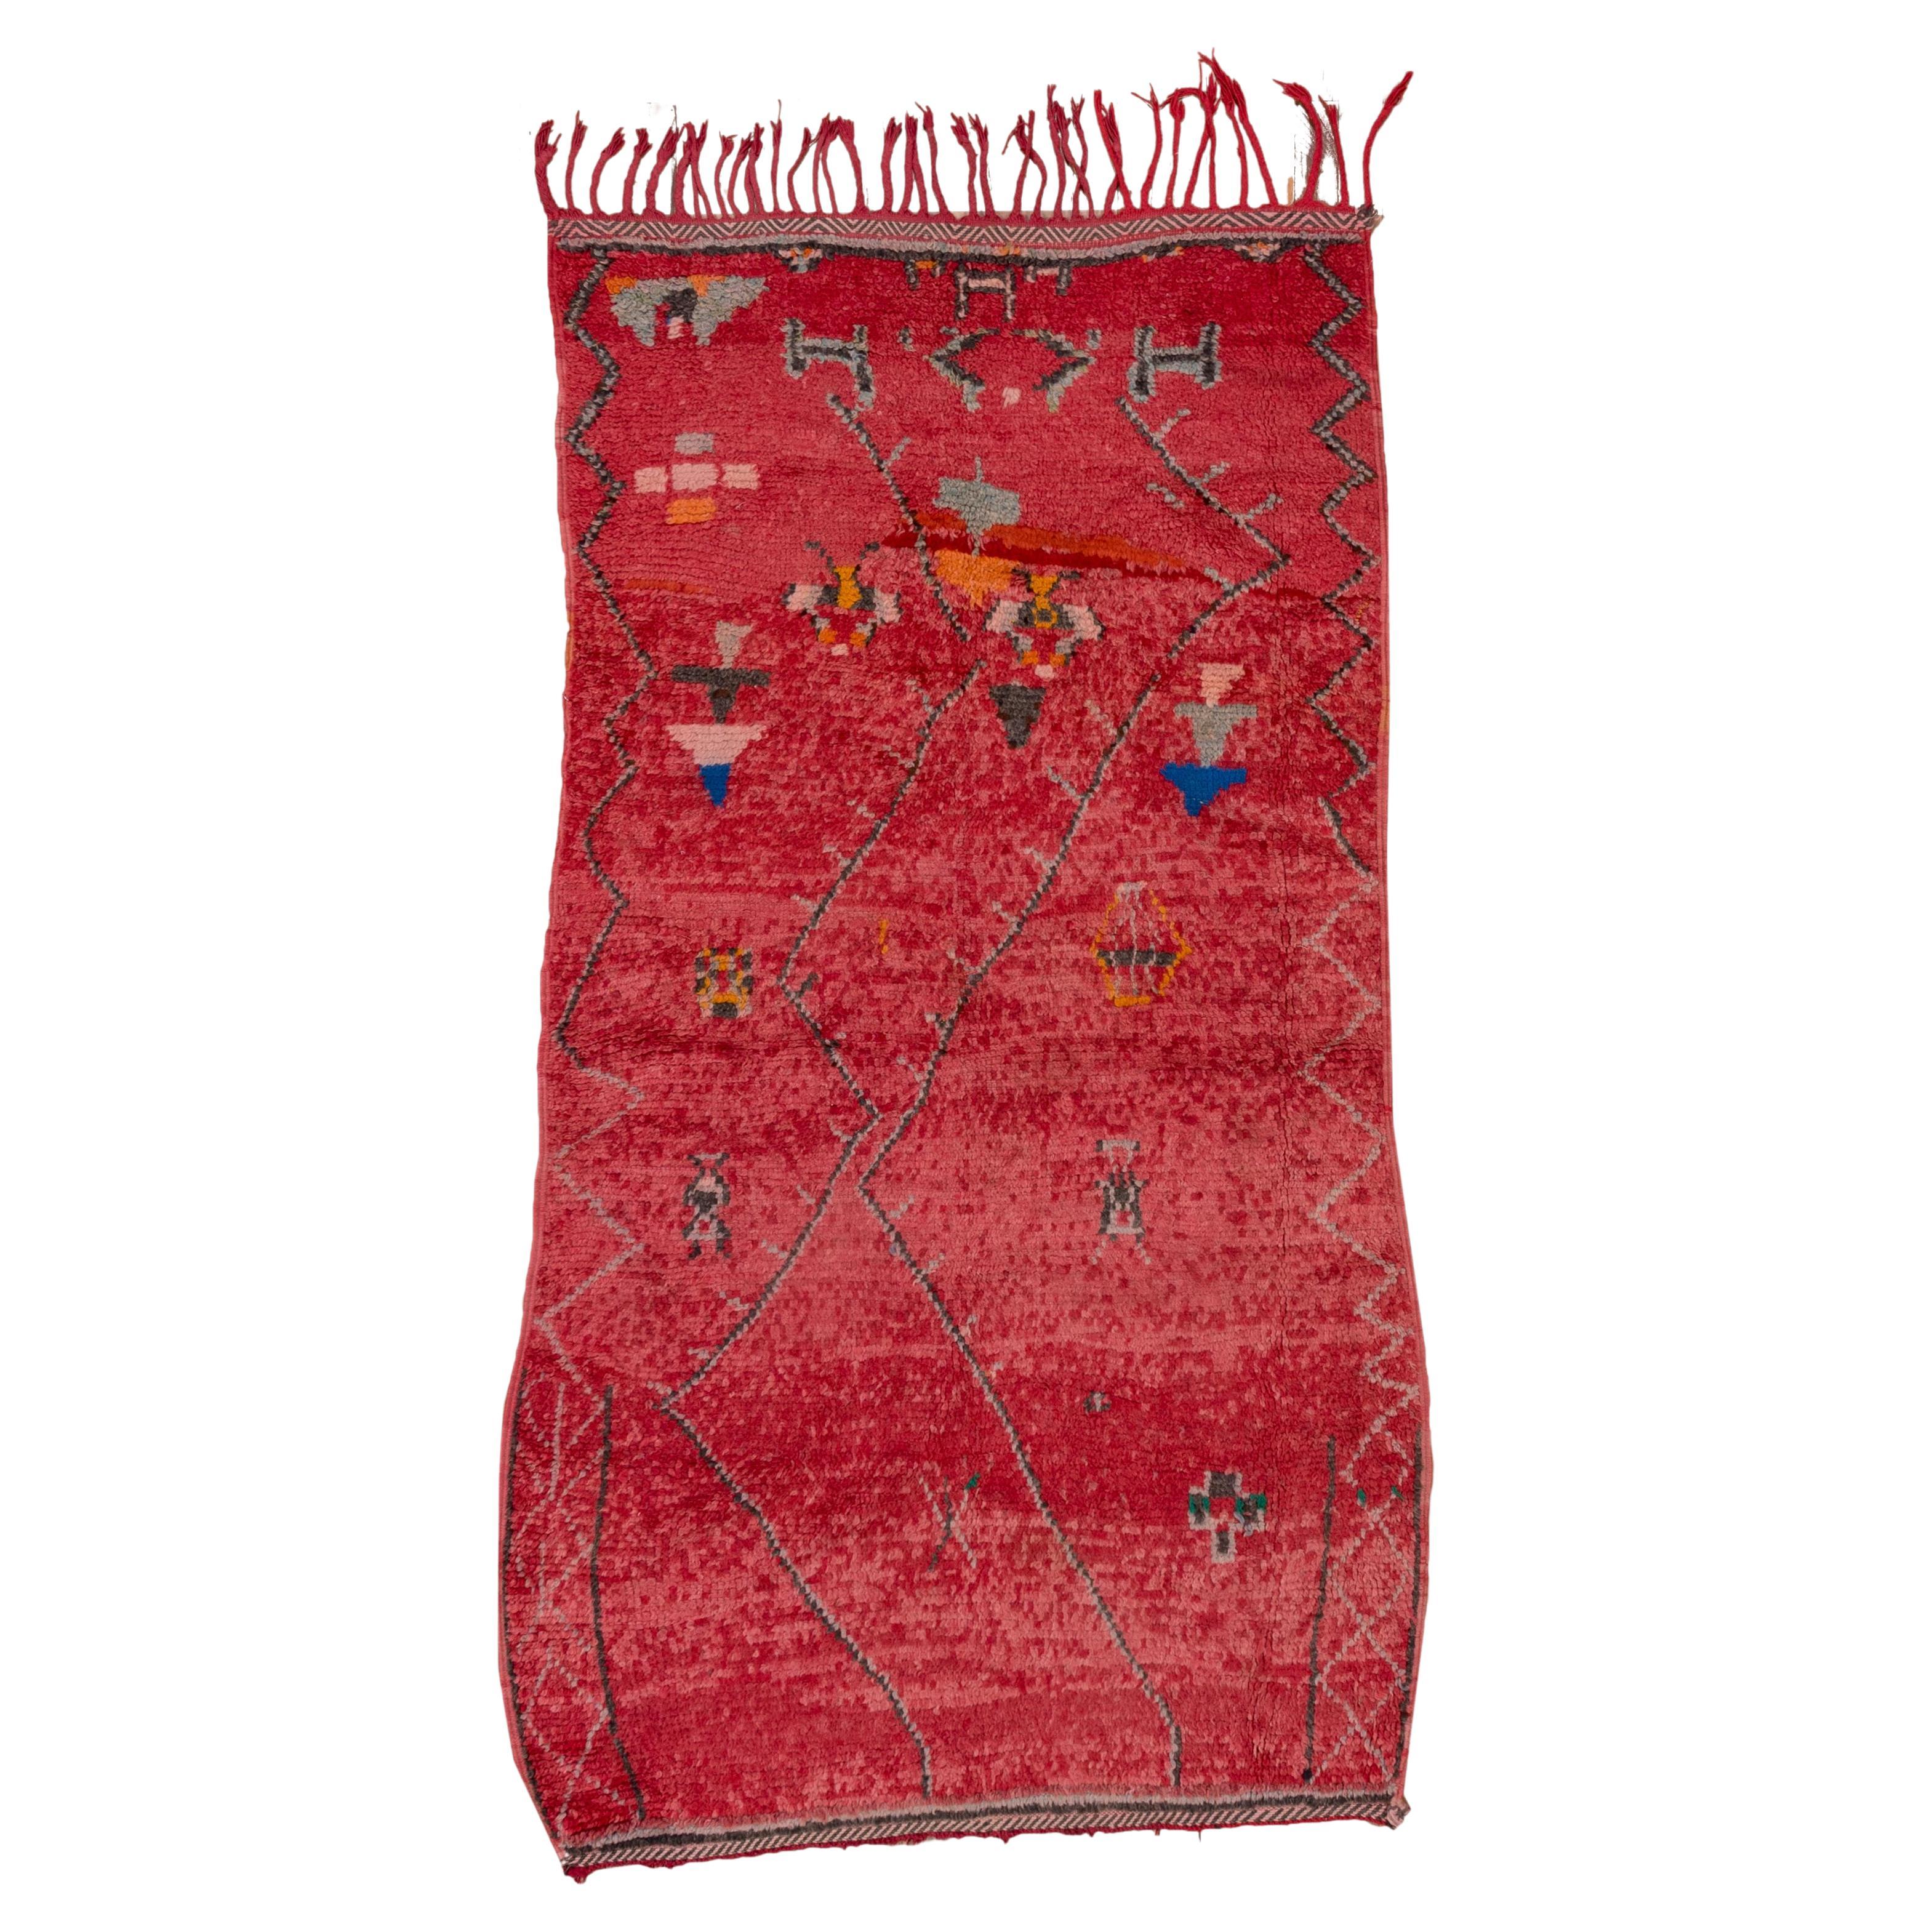 Roter marokkanischer Stammesschmuck aus Wolle